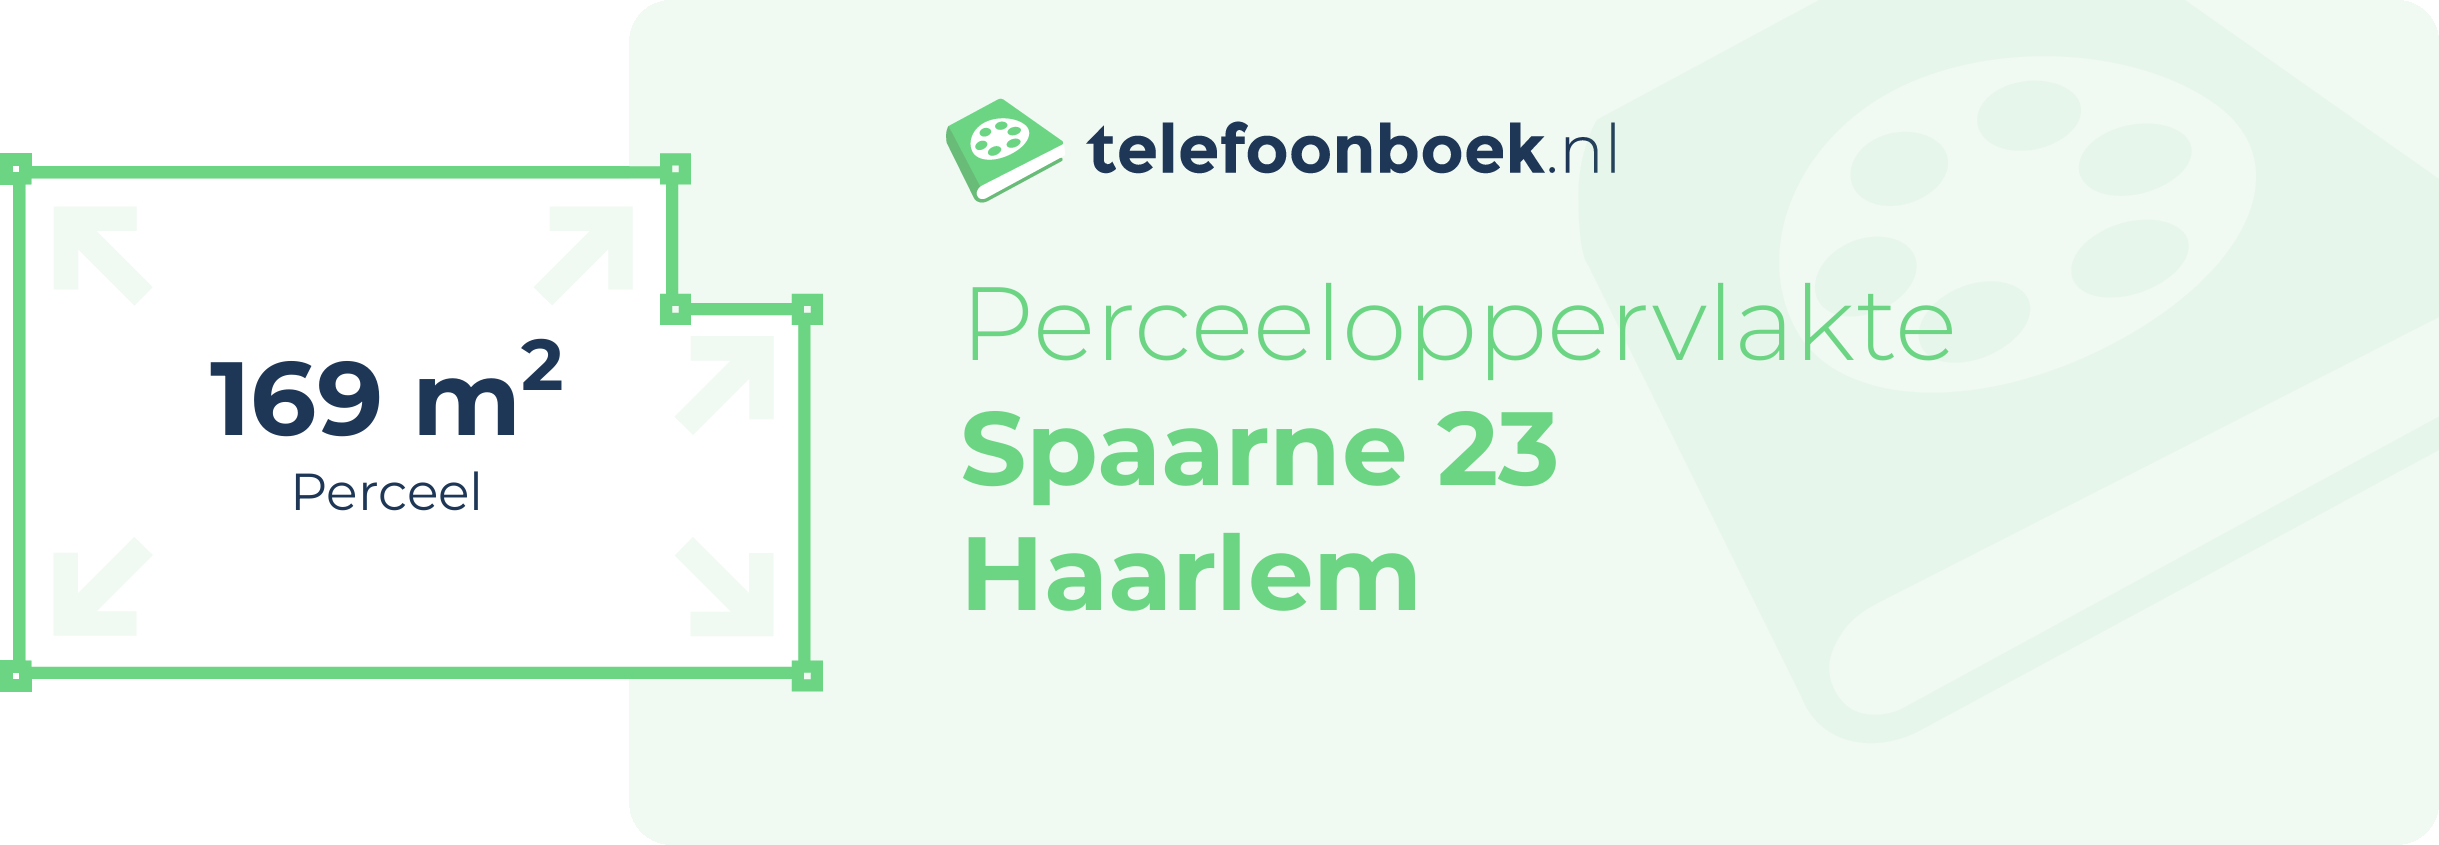 Perceeloppervlakte Spaarne 23 Haarlem